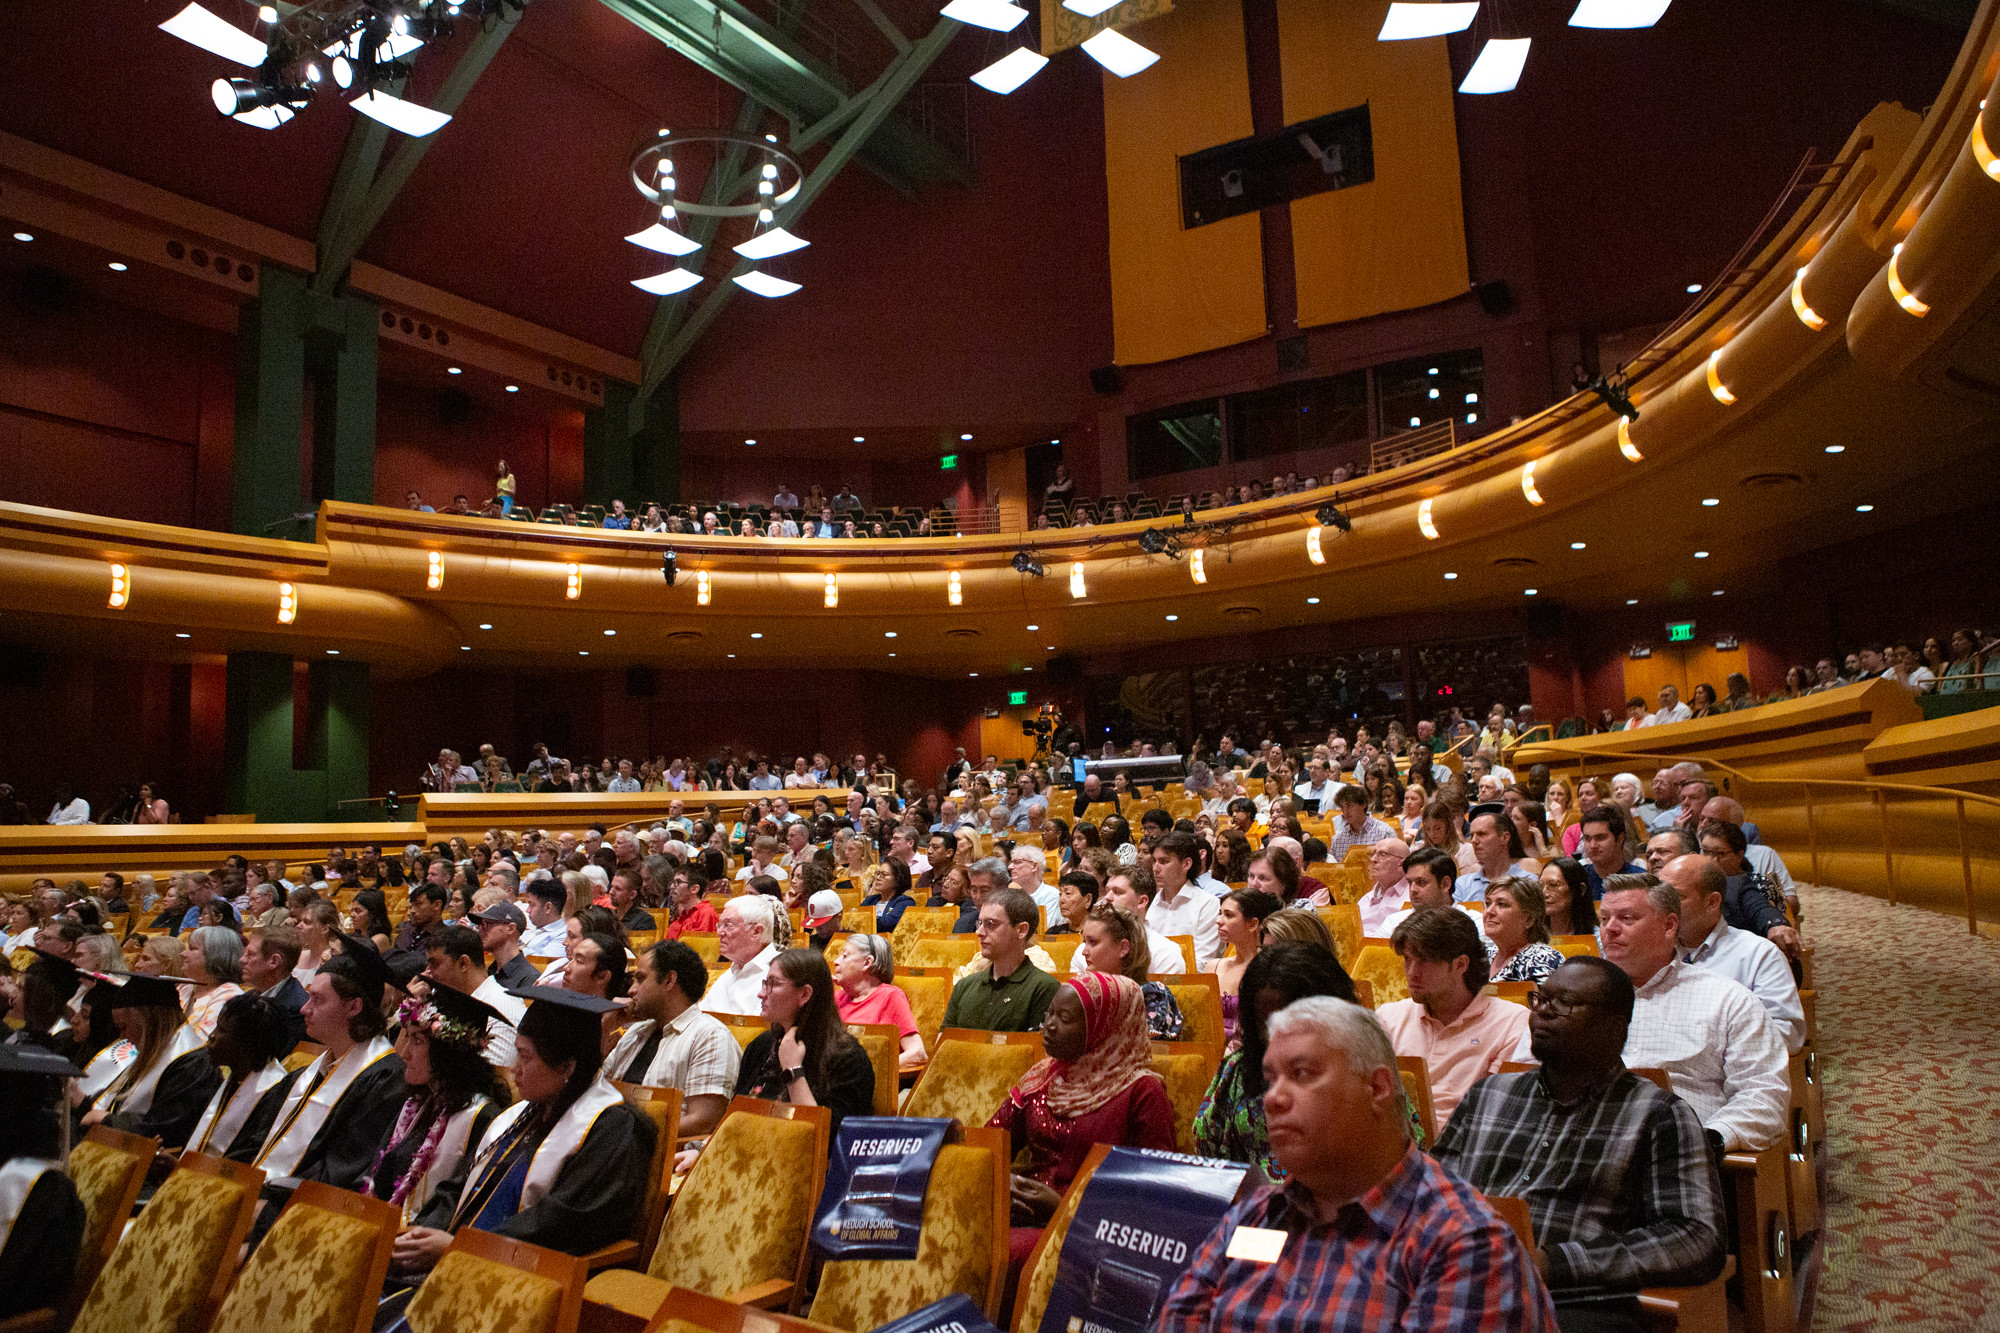 photo of audience in auditorium